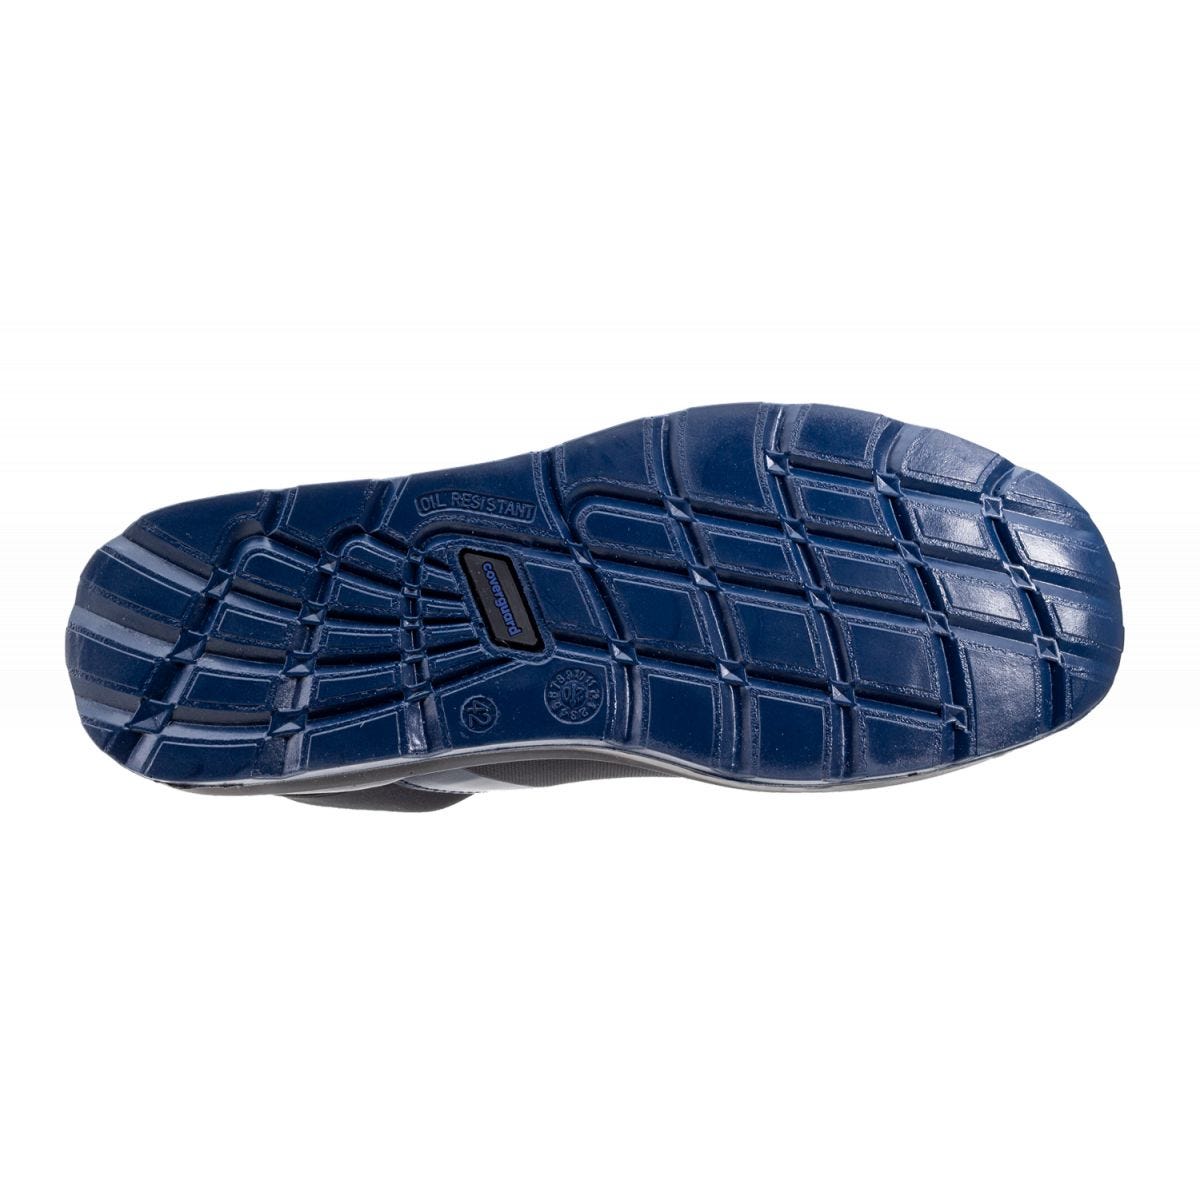 Chaussures de sécurité S1P PARAIBA Basse Noir Bleu - COVERGUARD - Taille 41 1